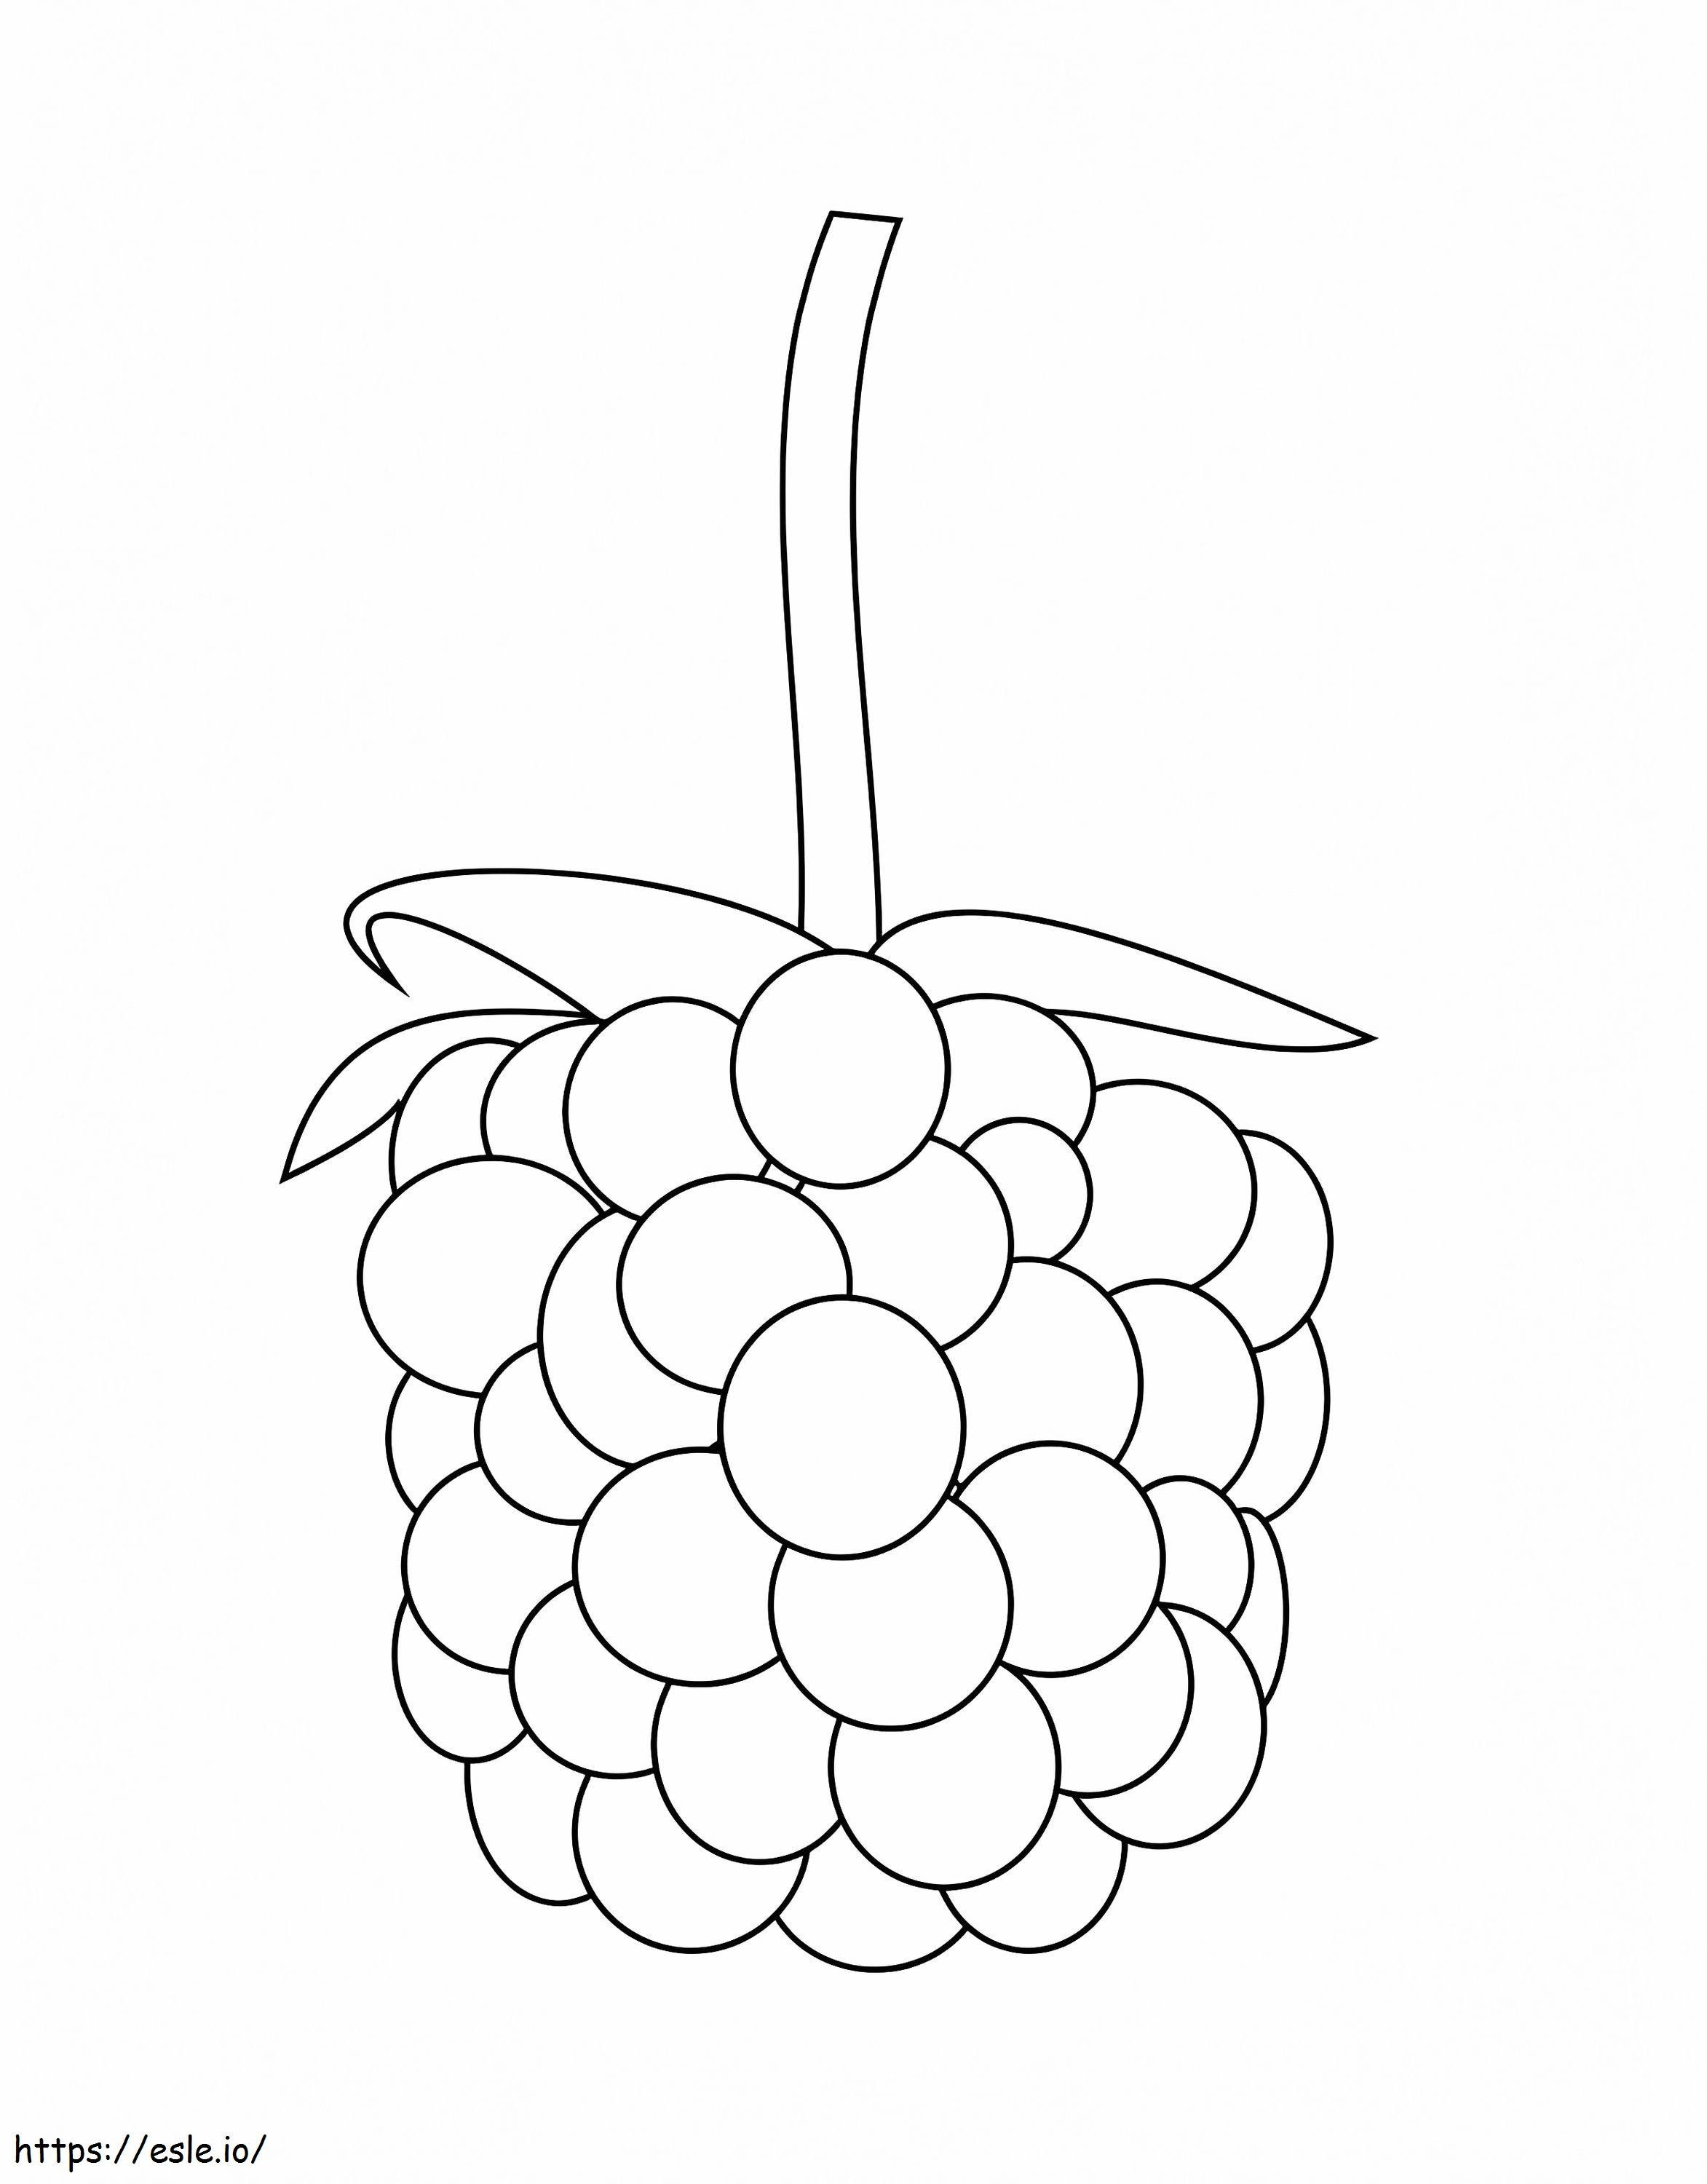 Coloriage  Un Blackberry A4 à imprimer dessin